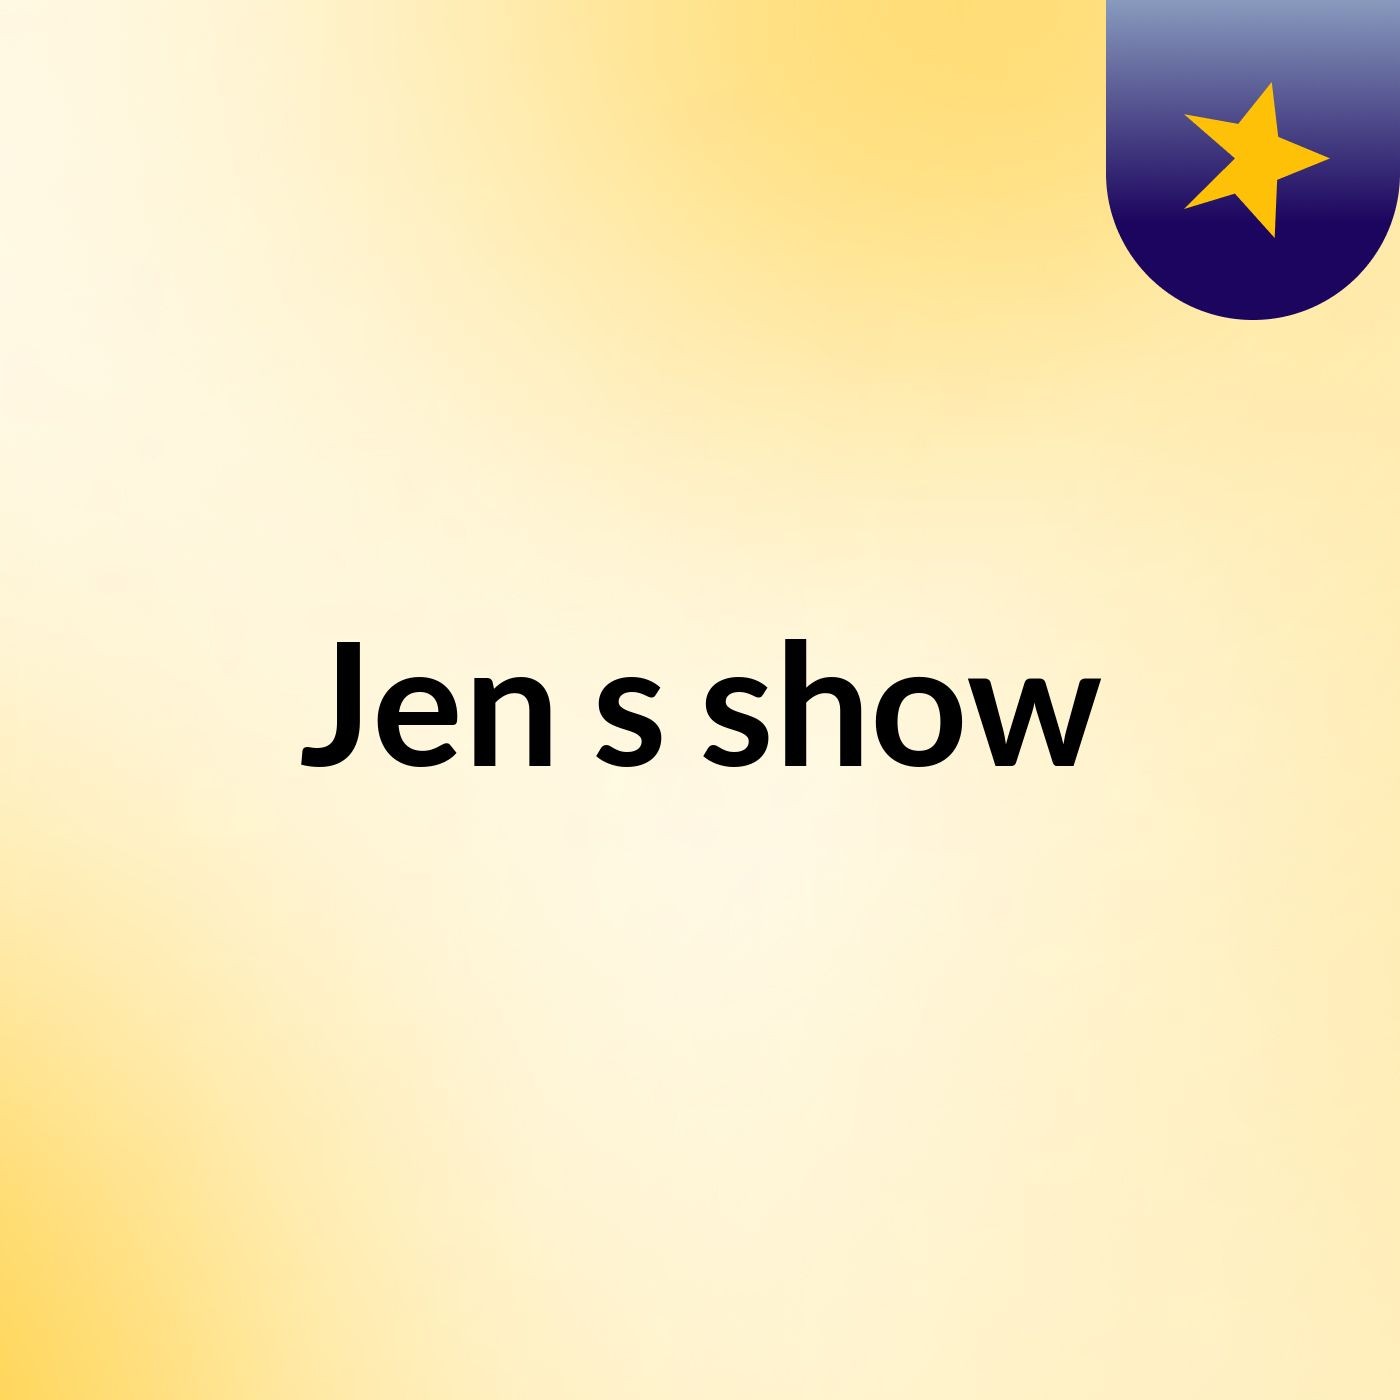 Jen's show